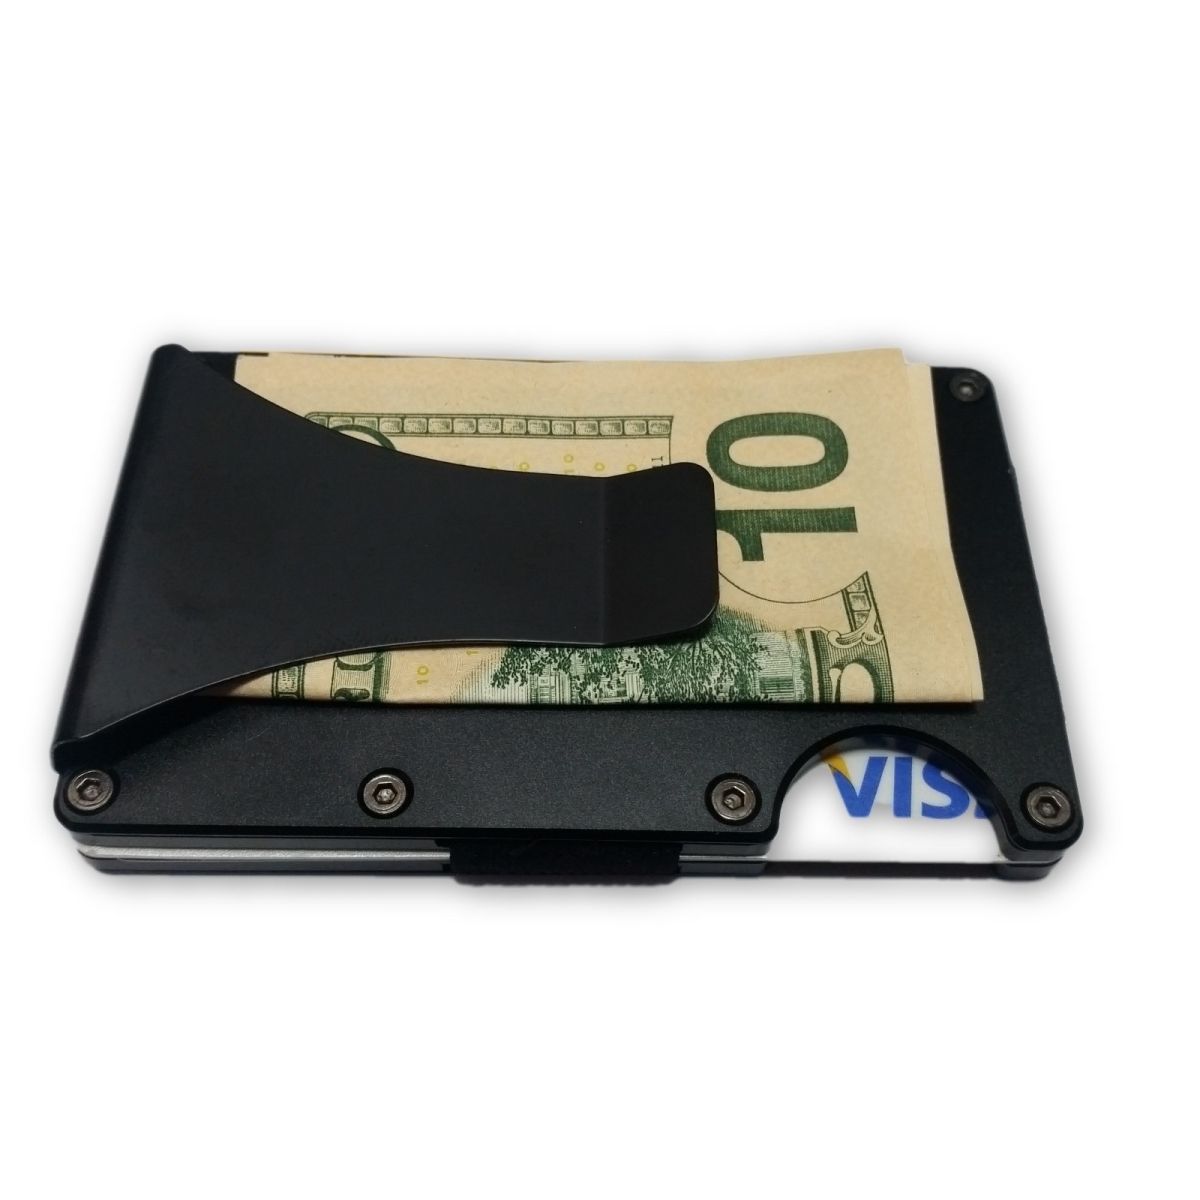 Middel reguleren video solo Minimalist Aluminium Wallet with Money Clip - Black | Wallets Online